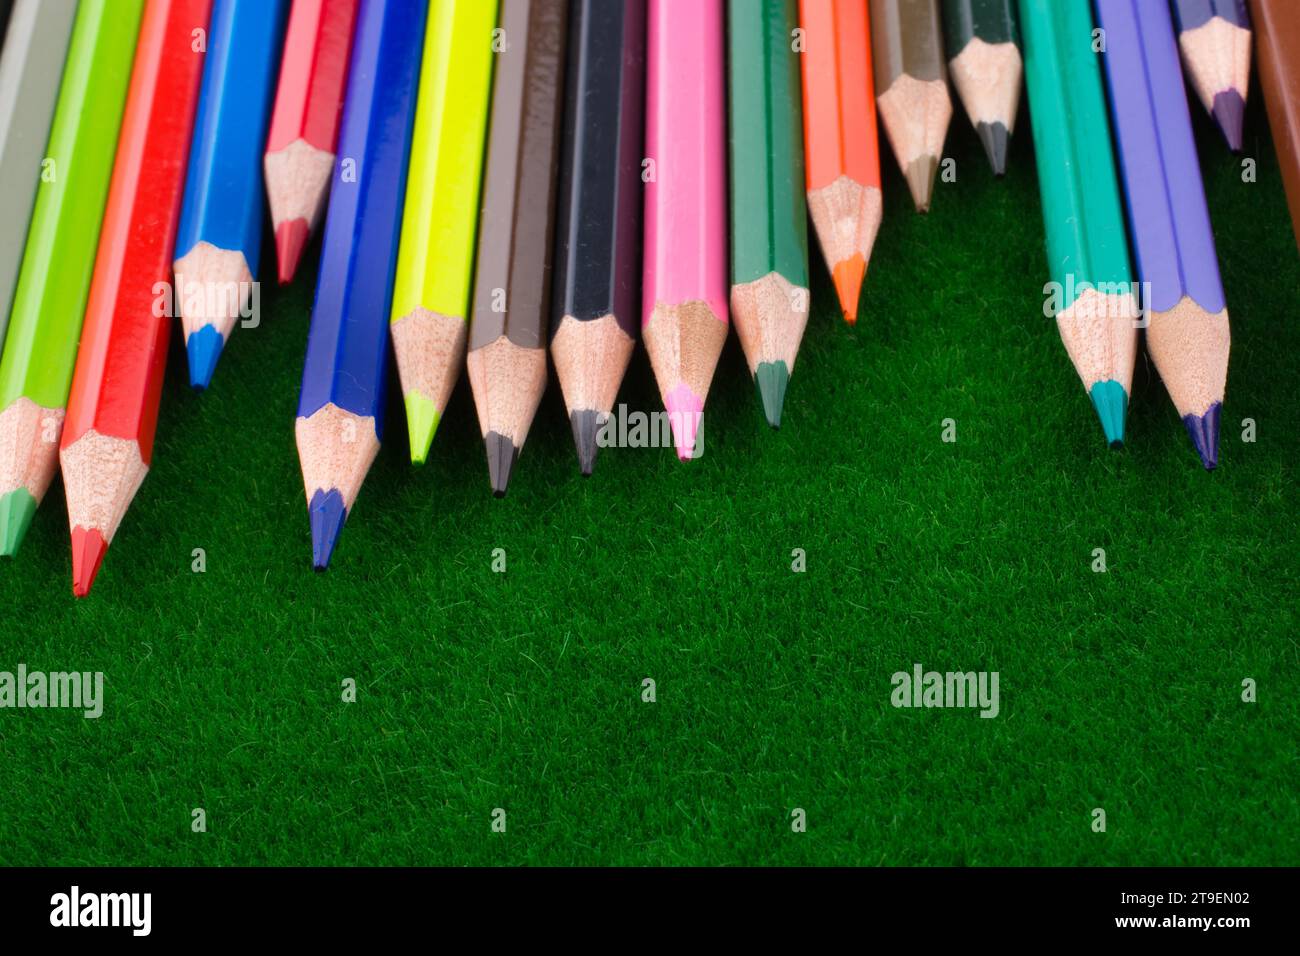 Bunte Bleistifte auf Kunstrasen Stockfoto